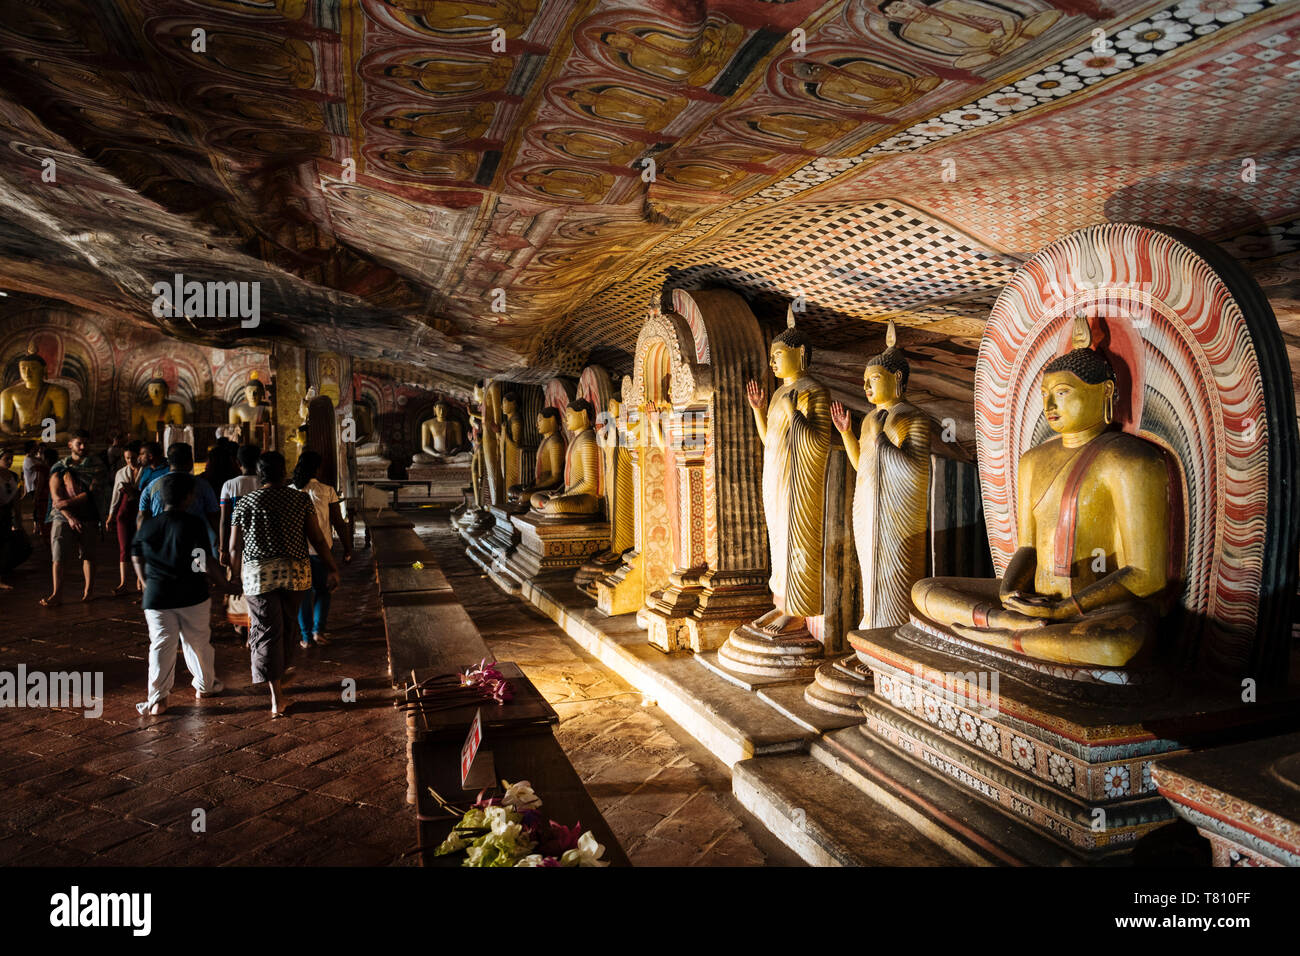 Dambulla Rock Cave Temple, UNESCO World Heritage Site, Central Province, Sri Lanka, Asia Stock Photo